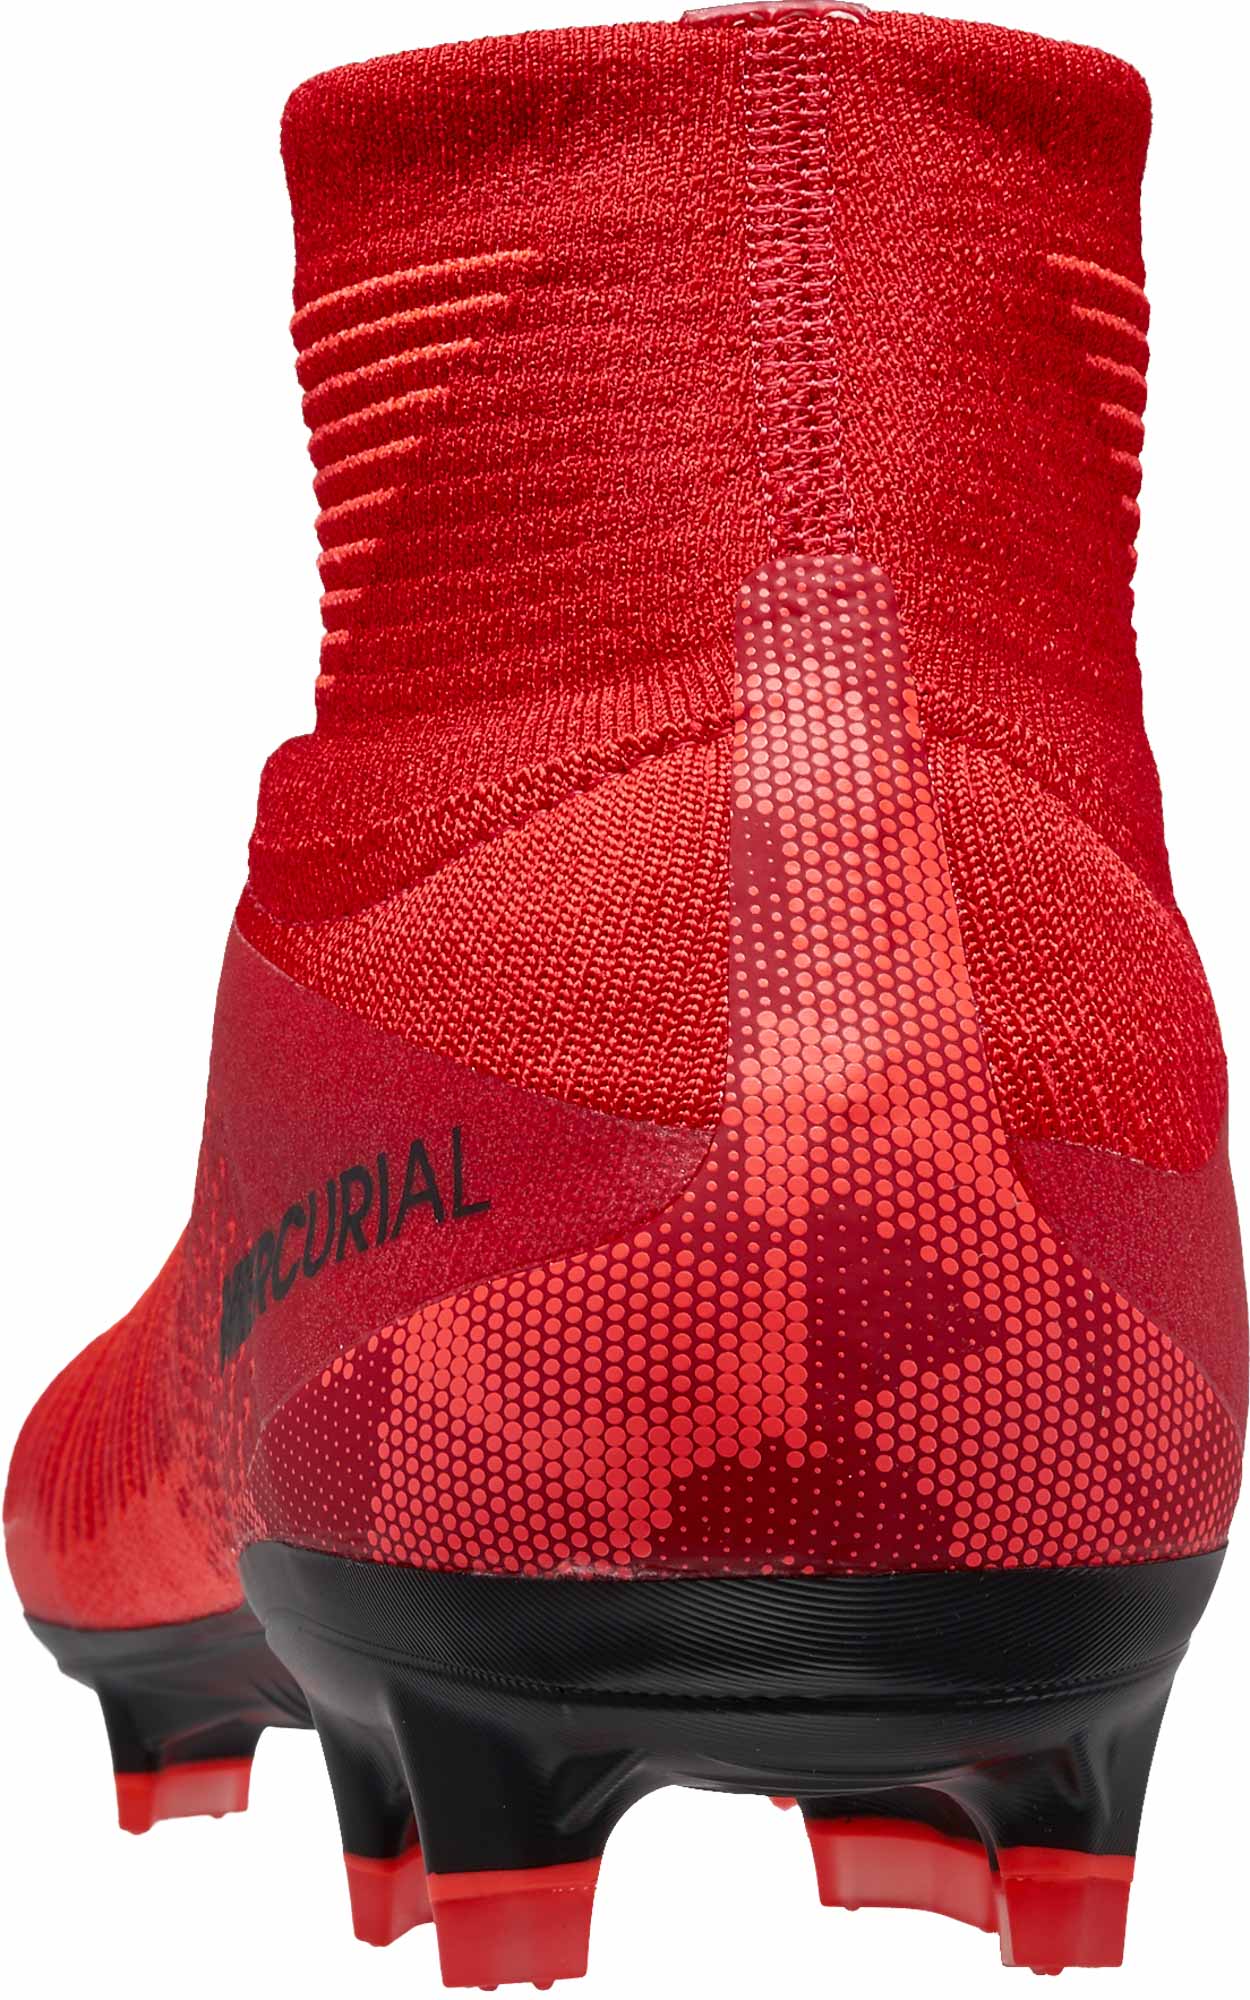 Nike Mercurial V FG - University Red & Black - Soccer